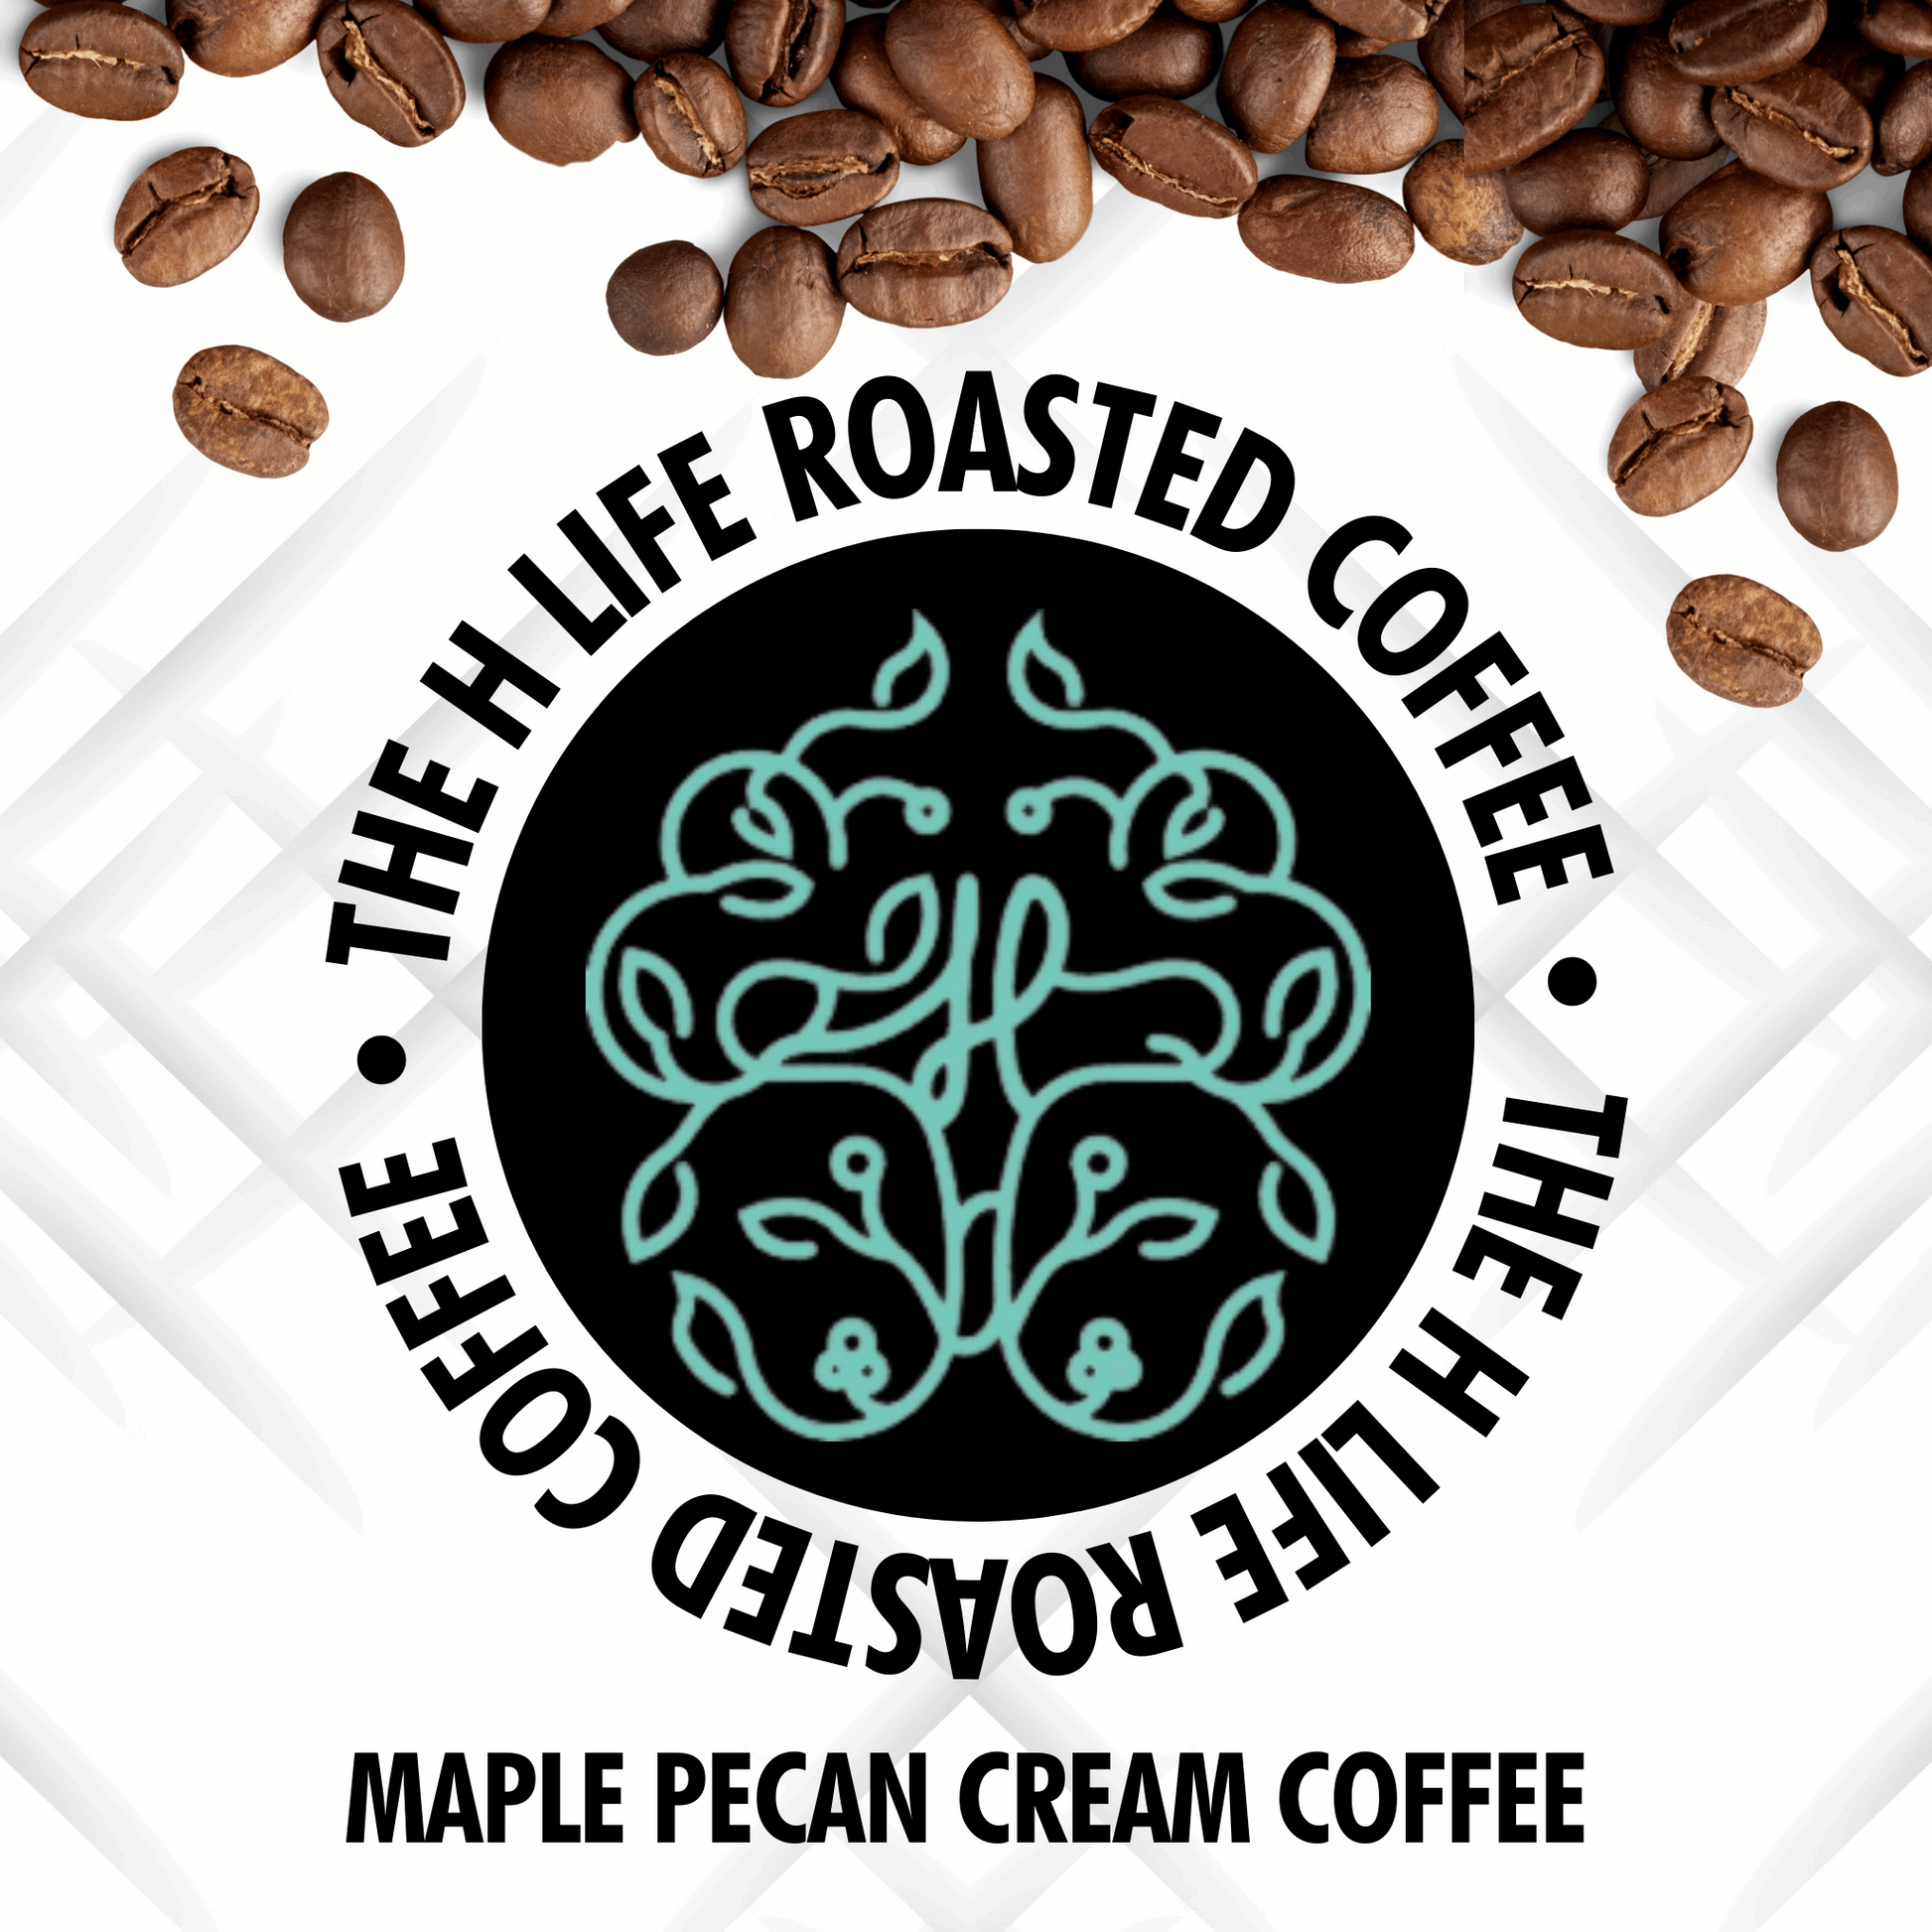 Maple Pecan Cream Coffee